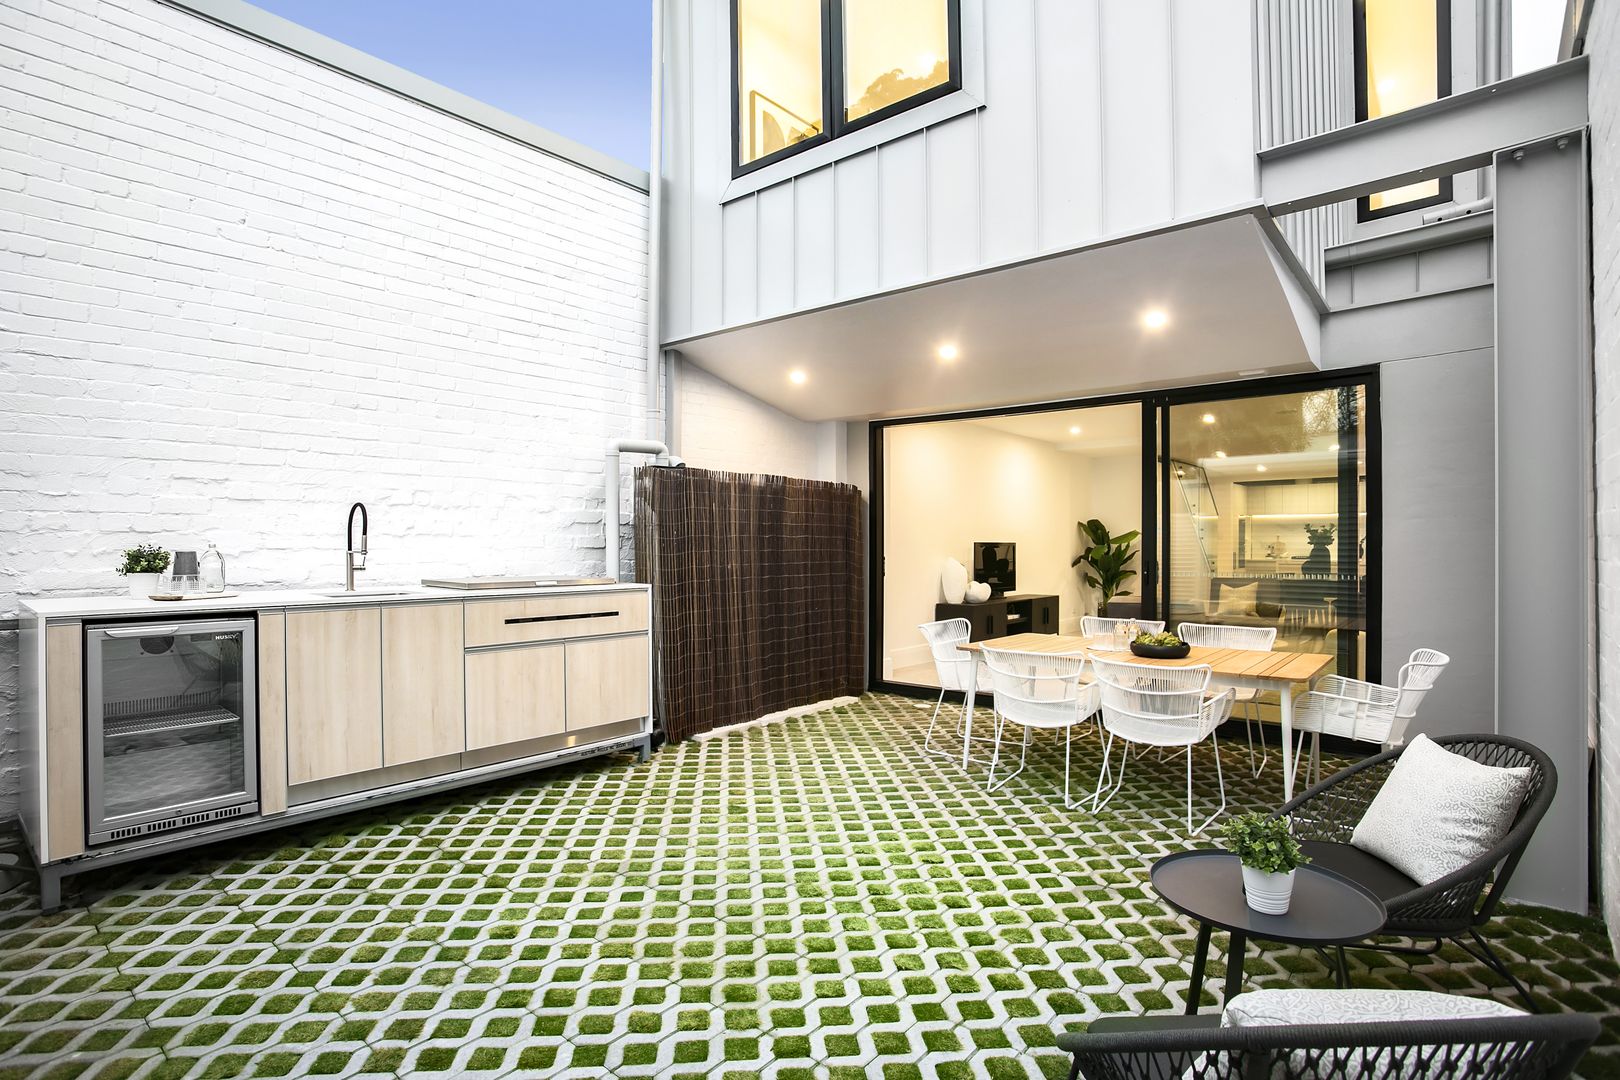 4 bedrooms House in 309 Belmont Street ALEXANDRIA NSW, 2015